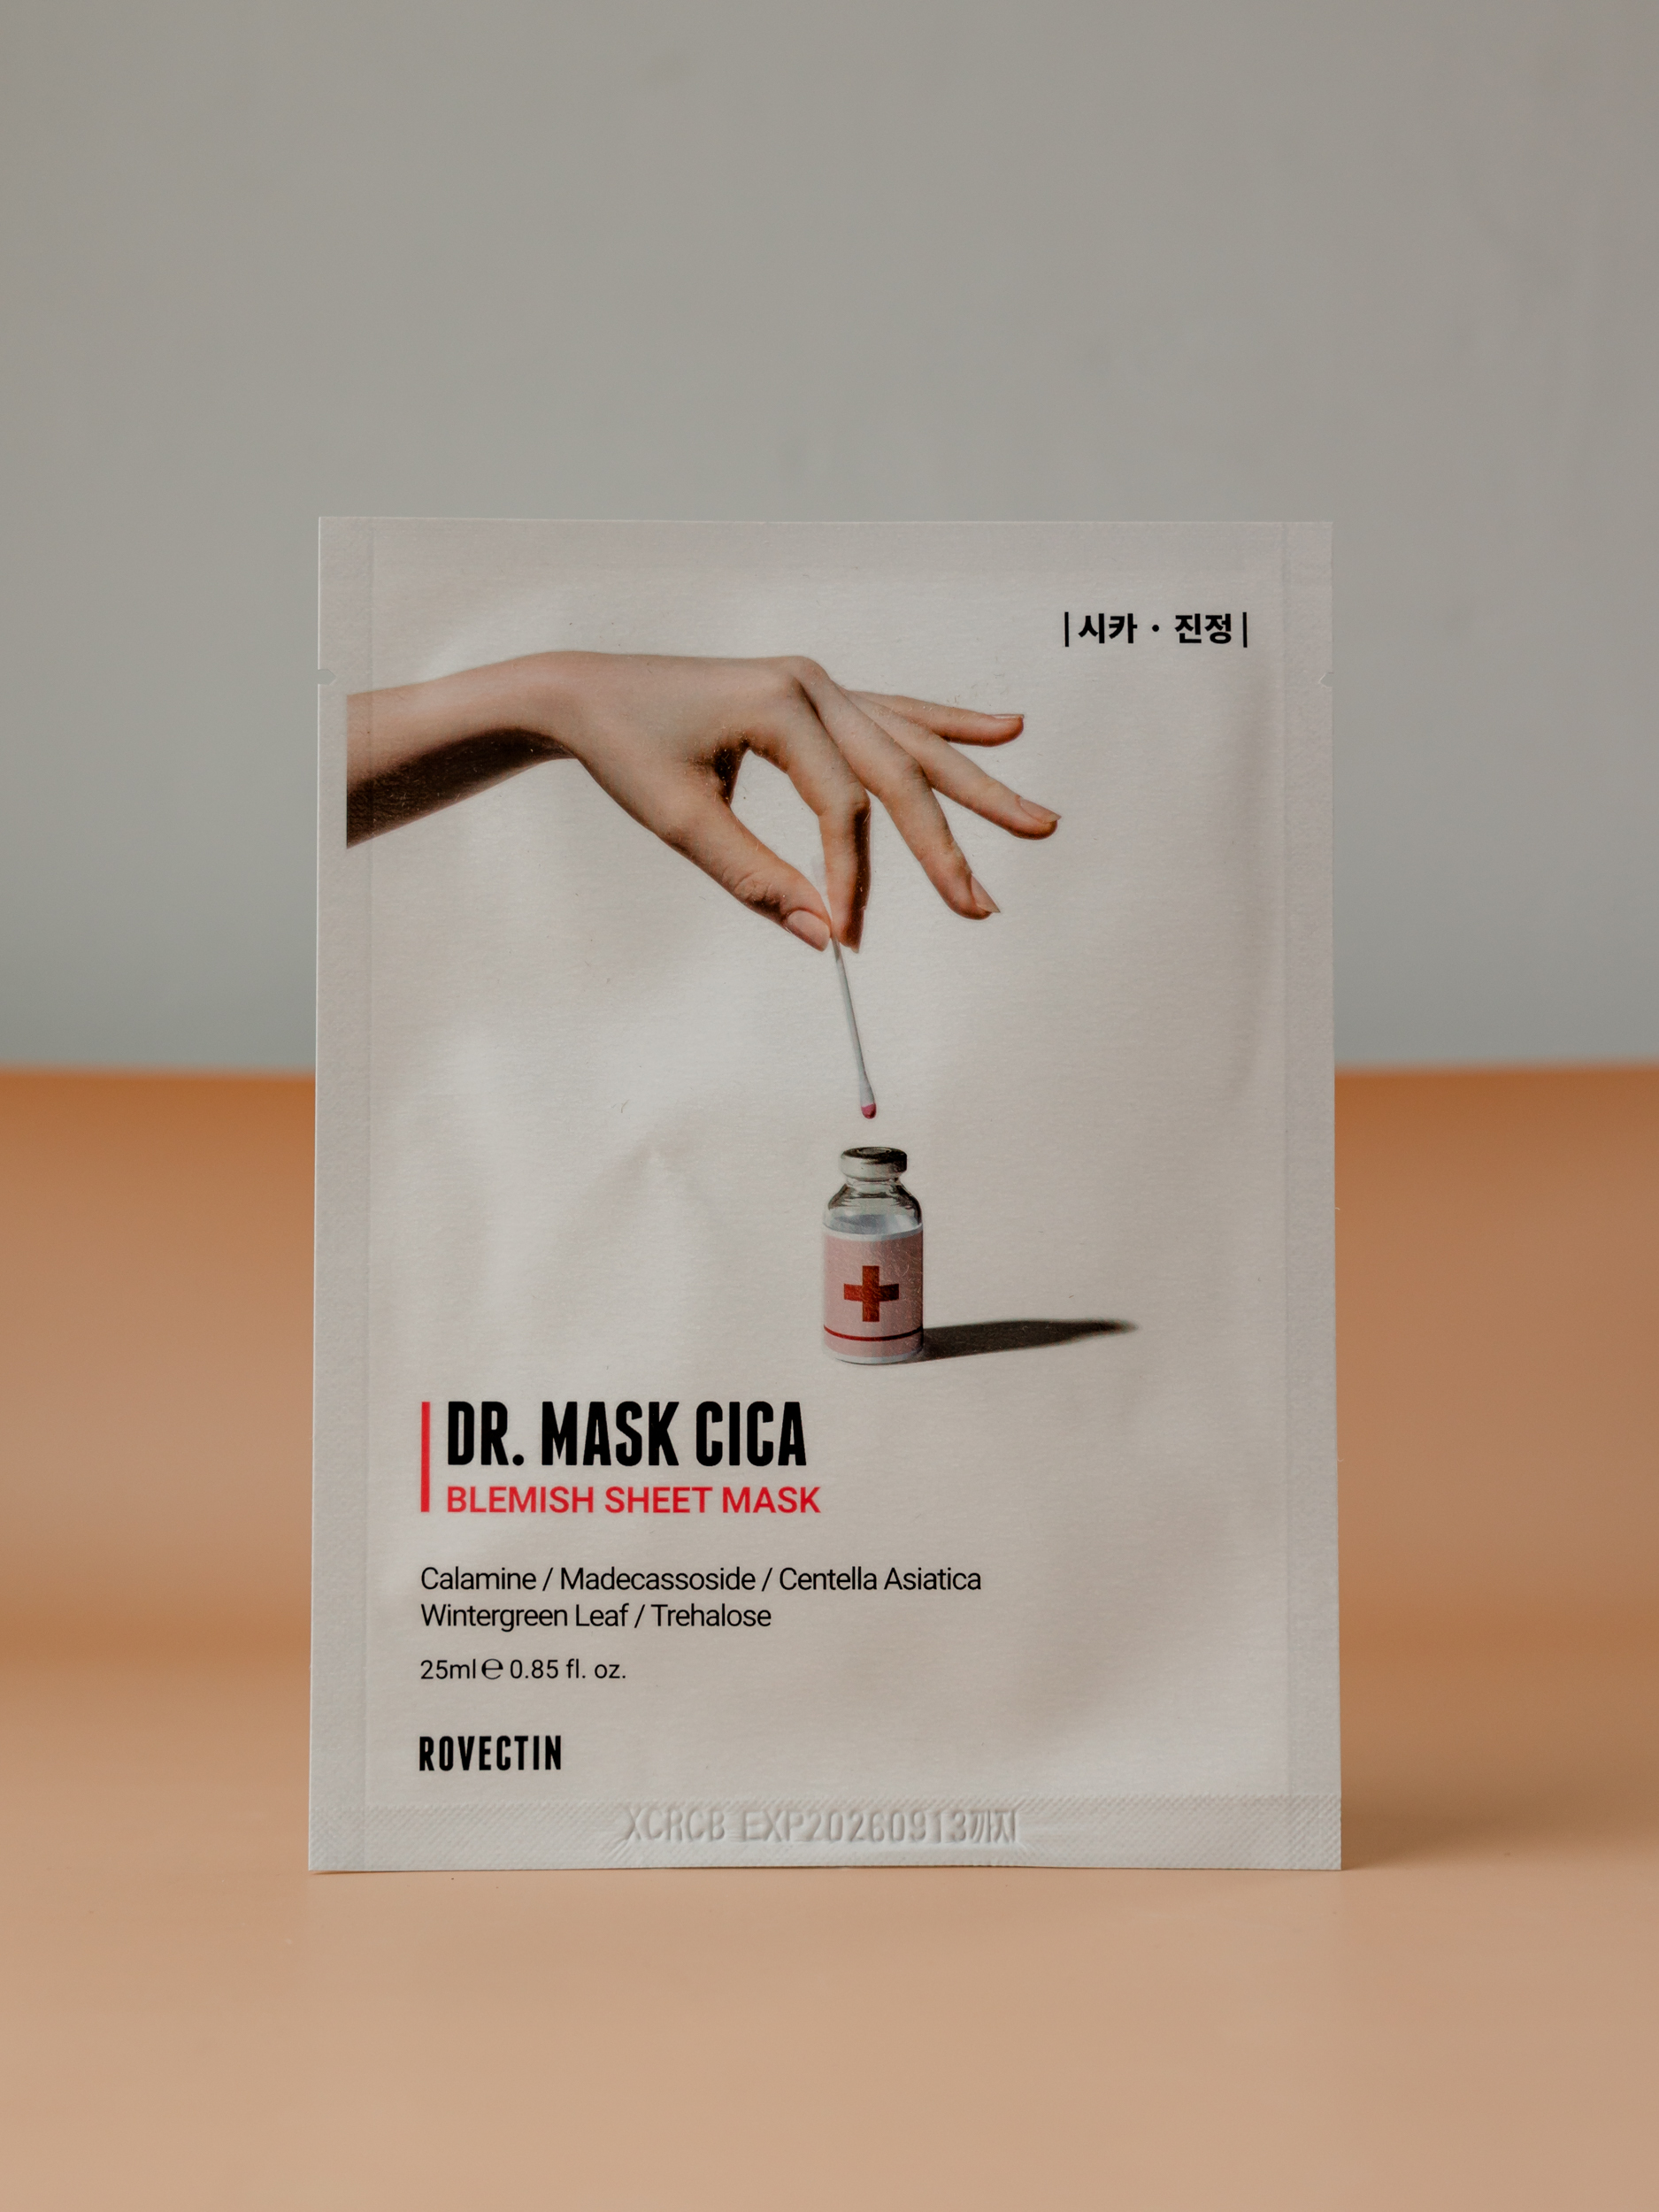 Тканевая маска, которая способна оказать сос- помощь ROVECTIN Skin Essentials Dr. Mask Cica Blemish Sheet Mask 25ml